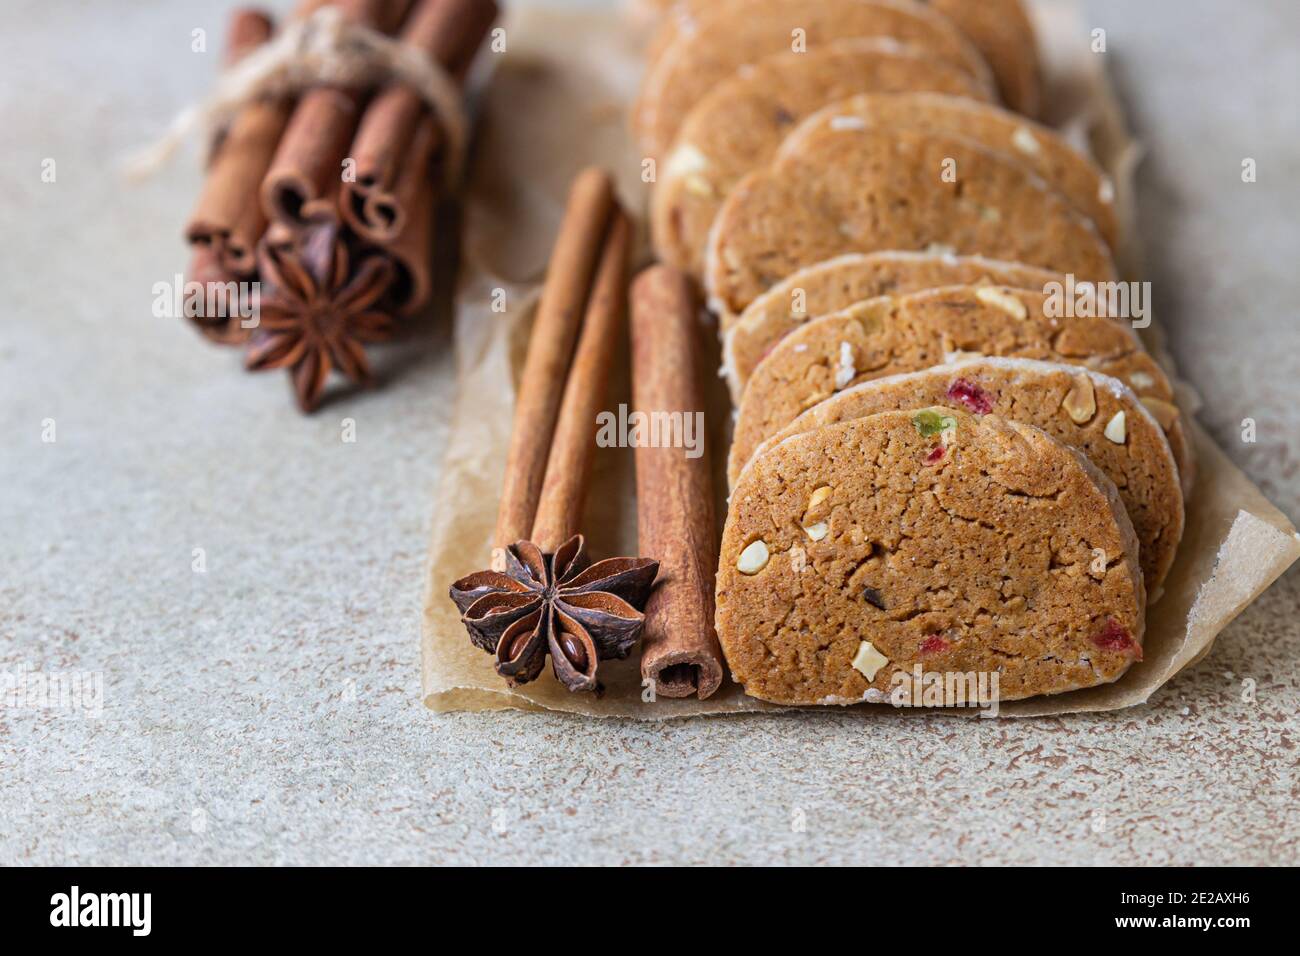 Biscuits au beurre danois épicés avec fruits confits, bâtonnets de cannelle et anis, fond en béton léger. Mise au point sélective. Banque D'Images